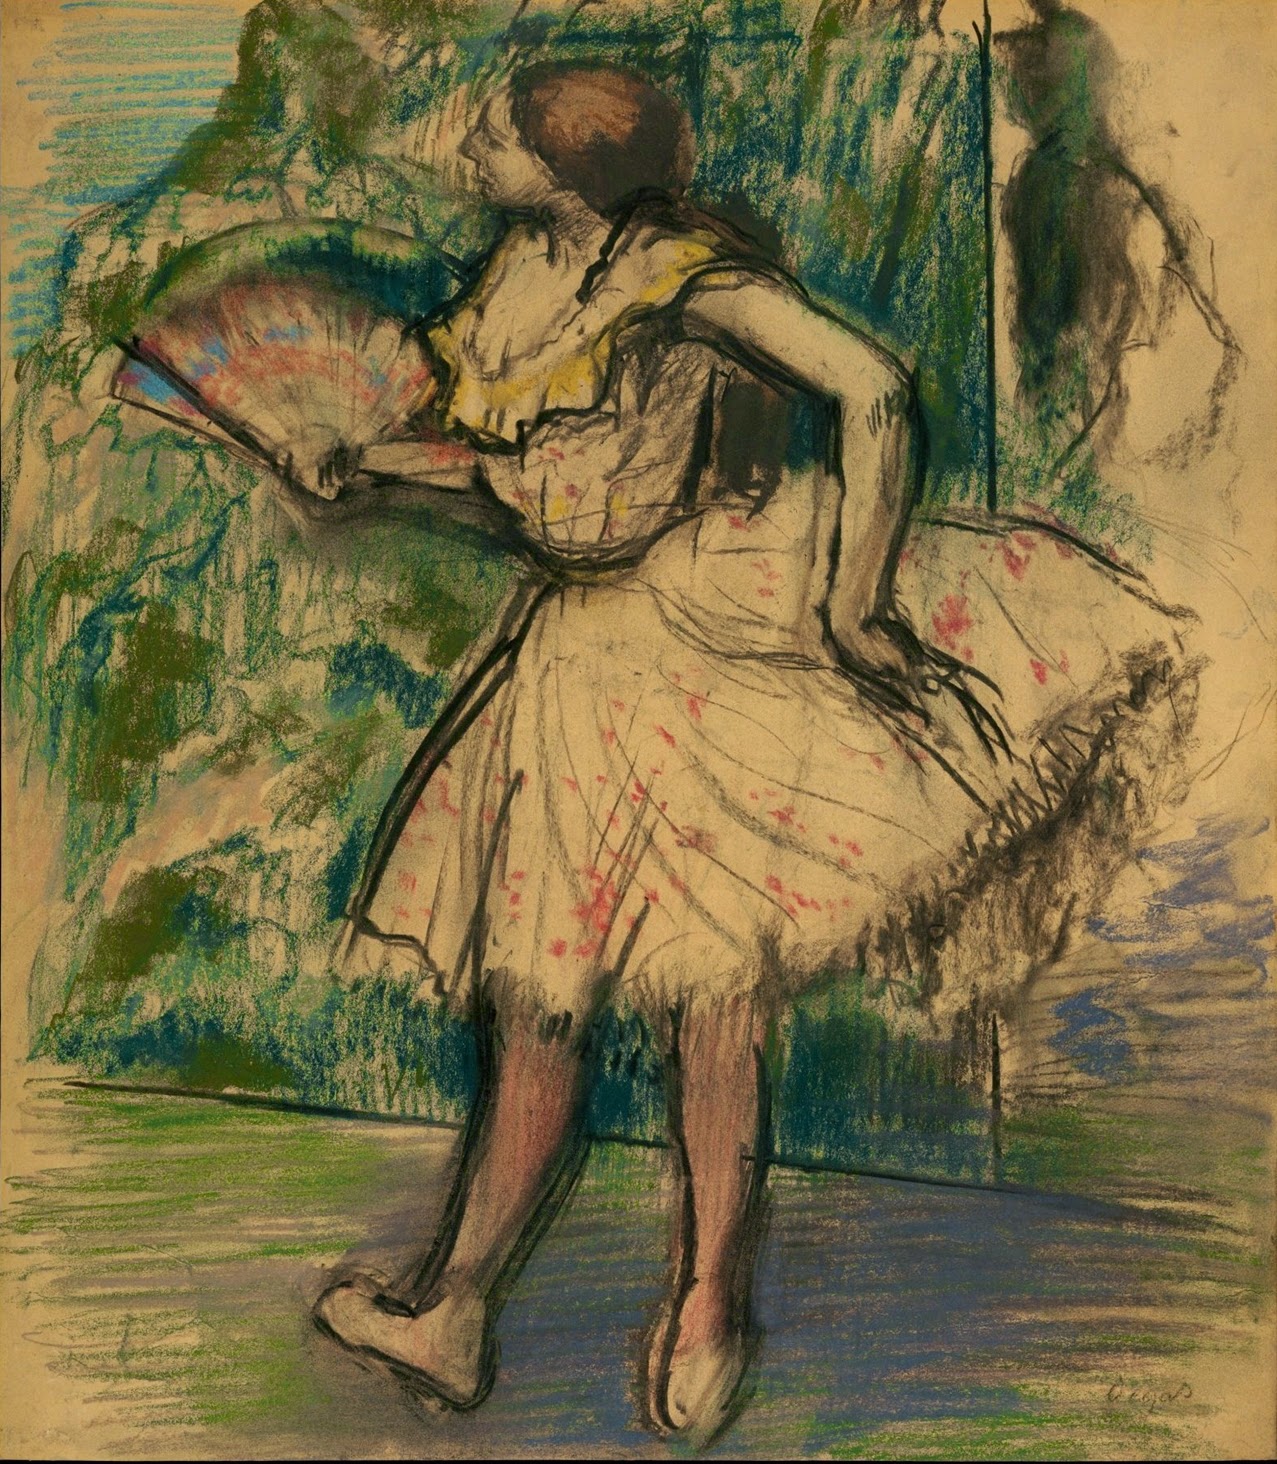 Edgar+Degas-1834-1917 (159).jpg